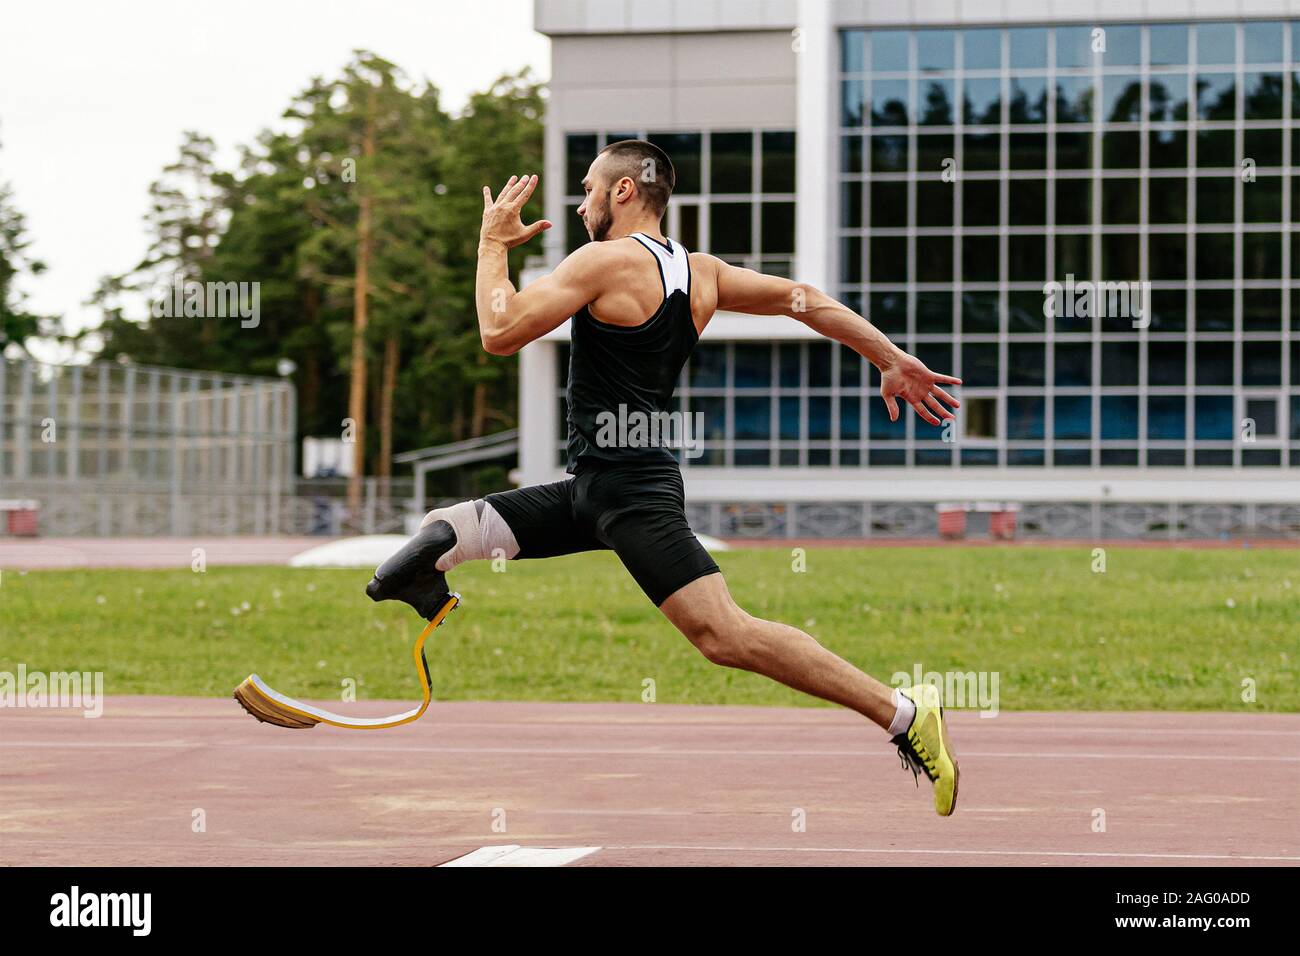 Fisicamente disabili atleta con gambe protesica salto in lungo di atletica leggera Foto Stock